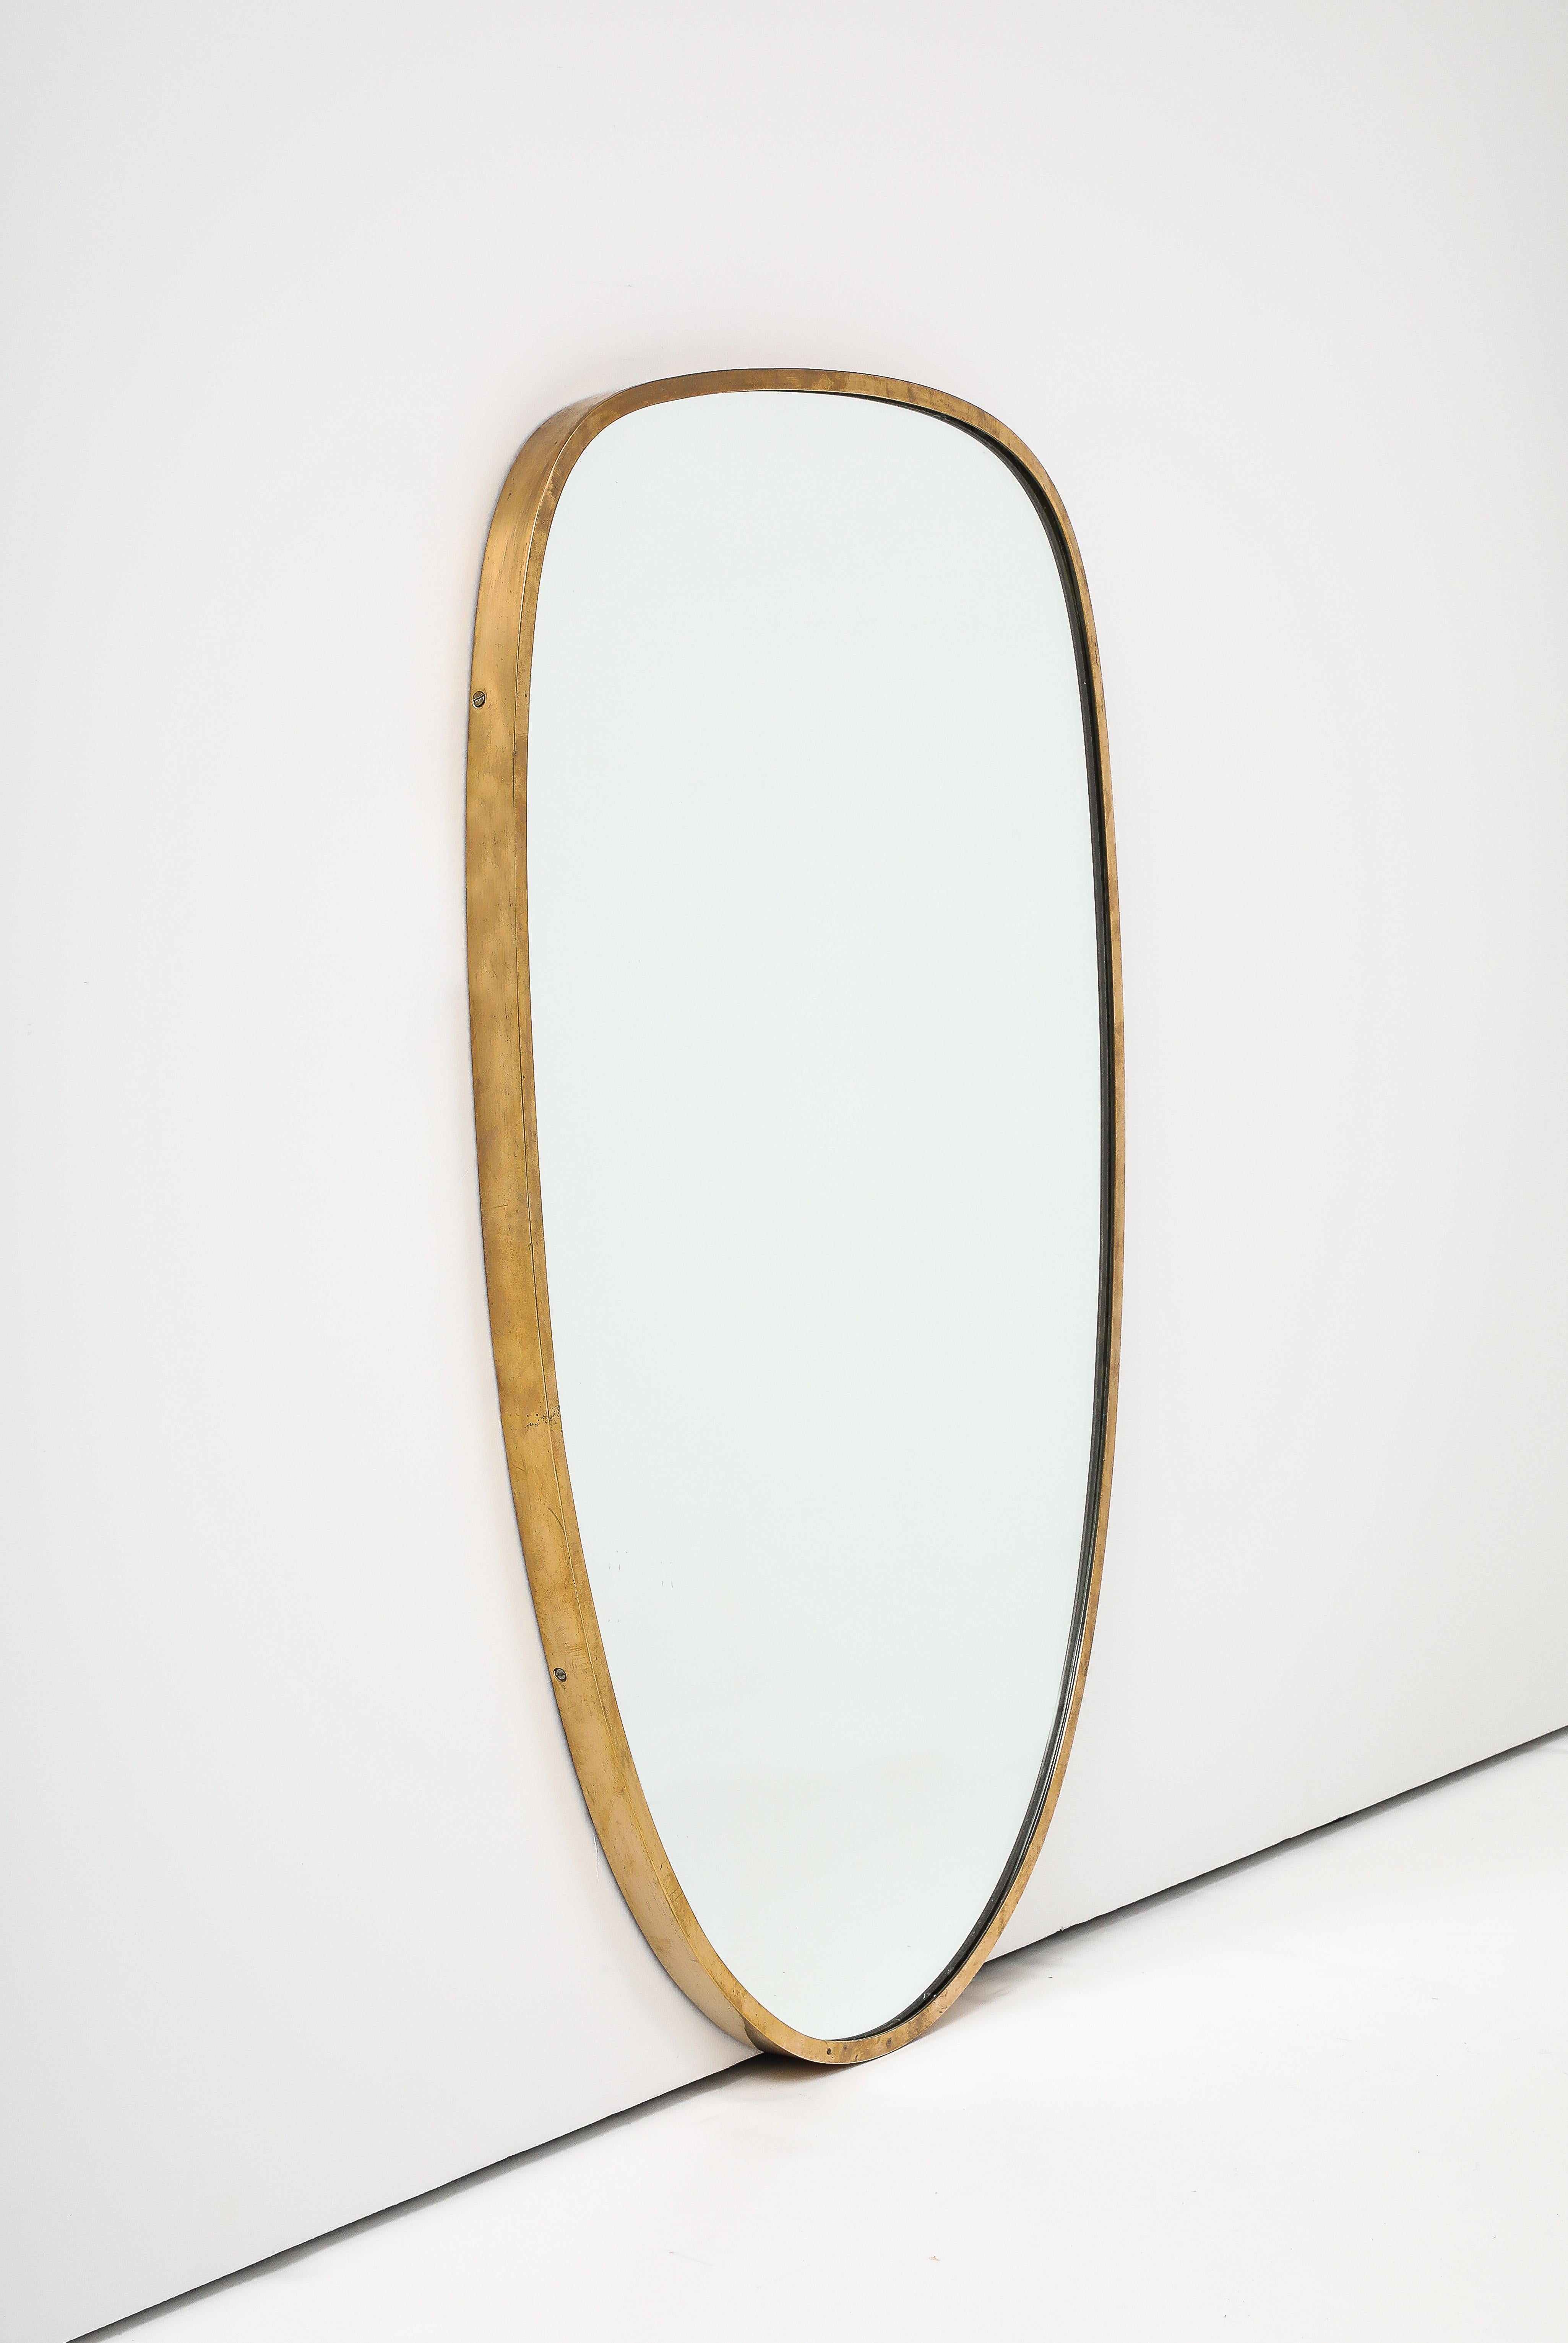 Moderner italienischer Spiegel mit Messingrahmen, Italien, um 1950
Messing, Glas
H: 30 T: 1 B: 19 in.

Ungewöhnliche Form oft nicht gefunden